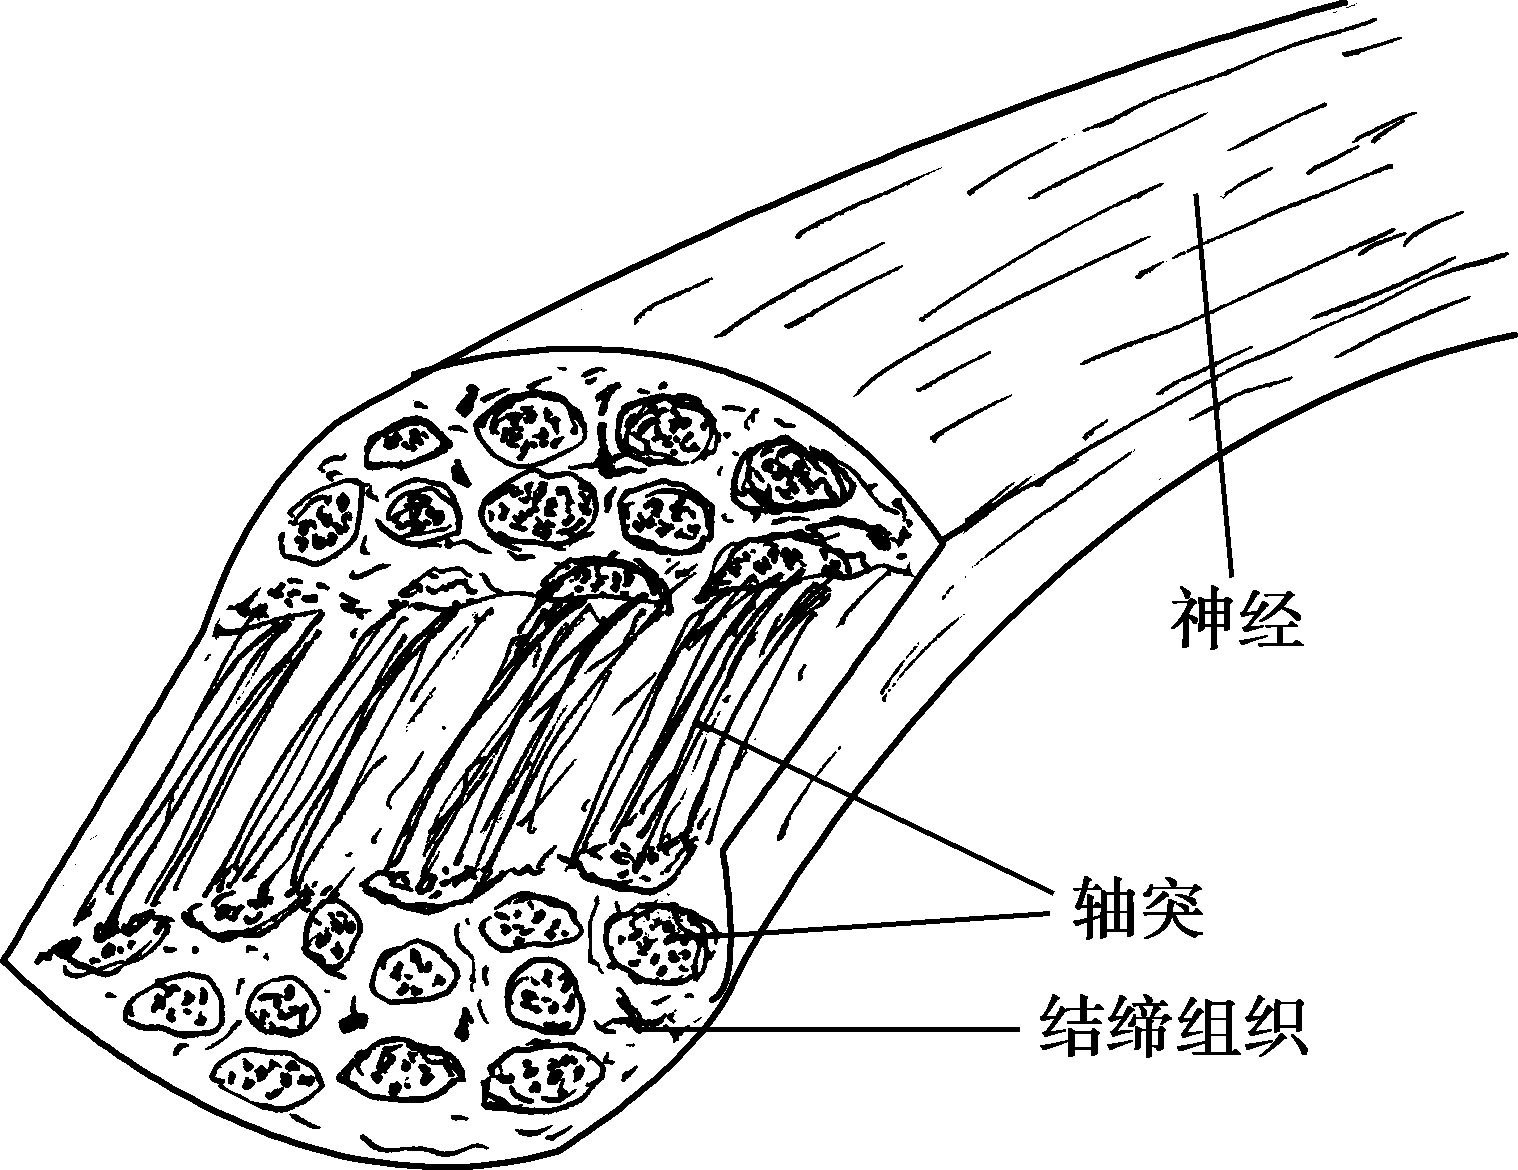 图2-2-7 神经纤维(束)的结构模式图